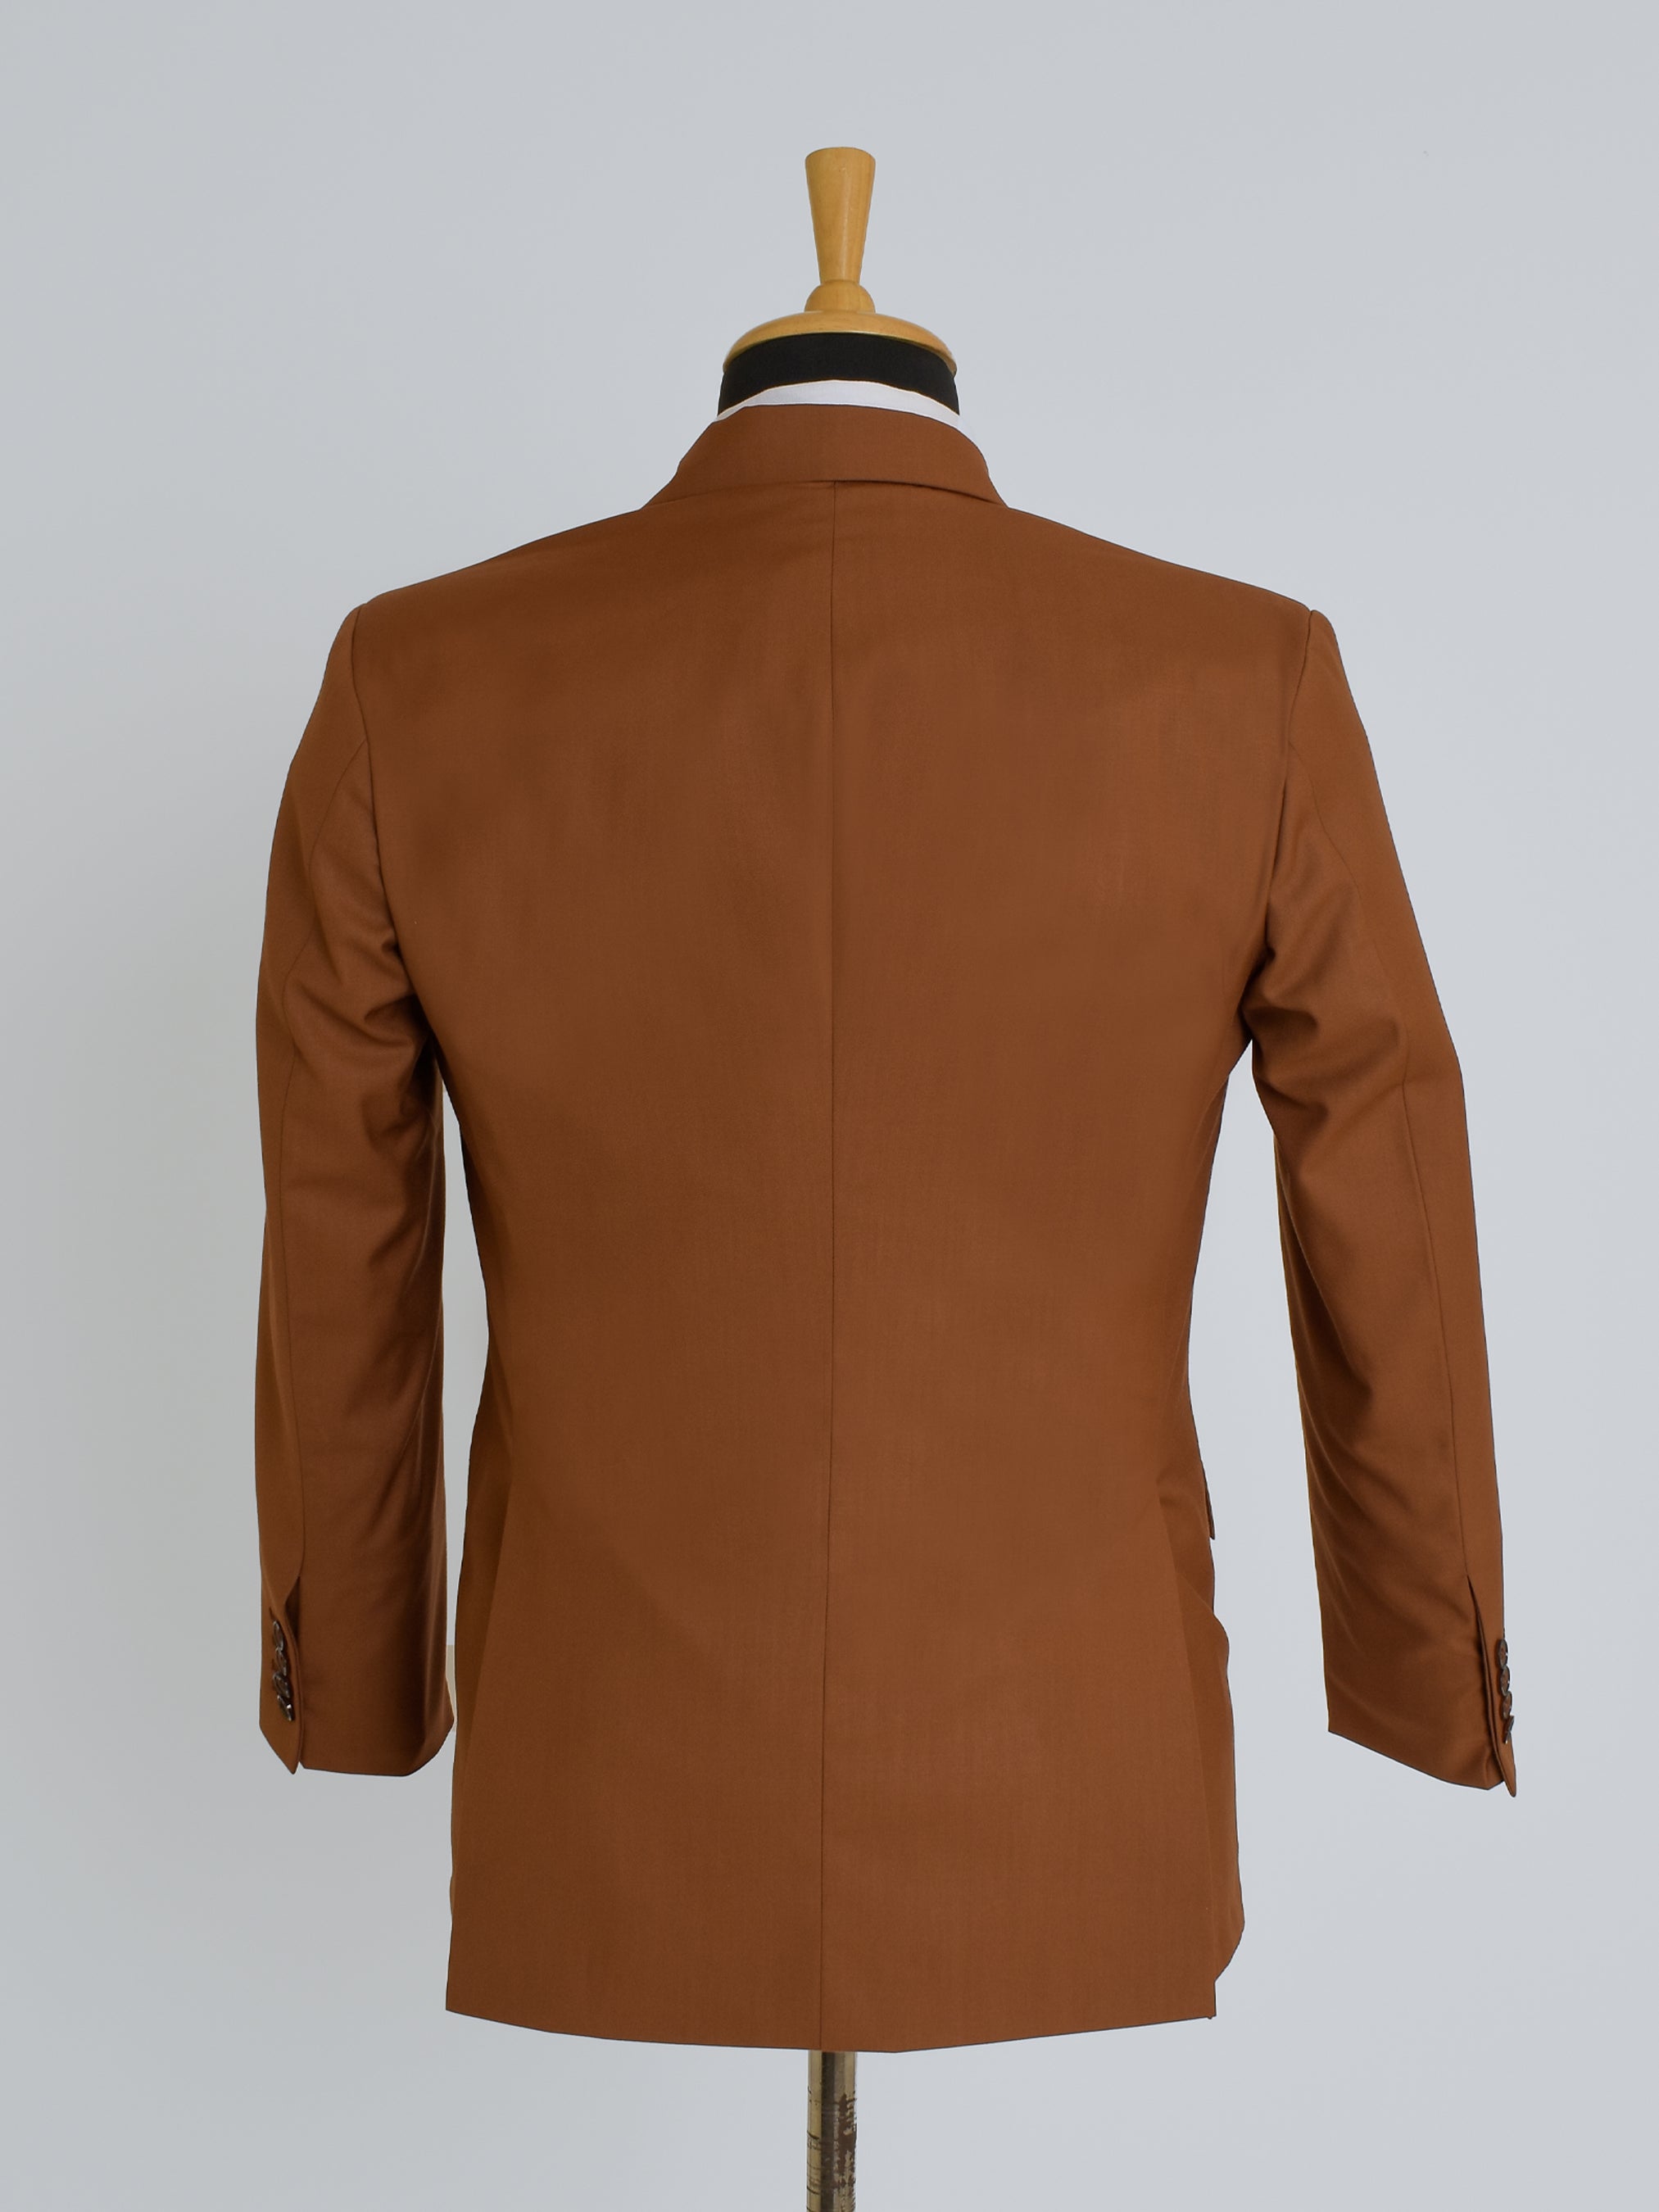 Chestnut Business Suit